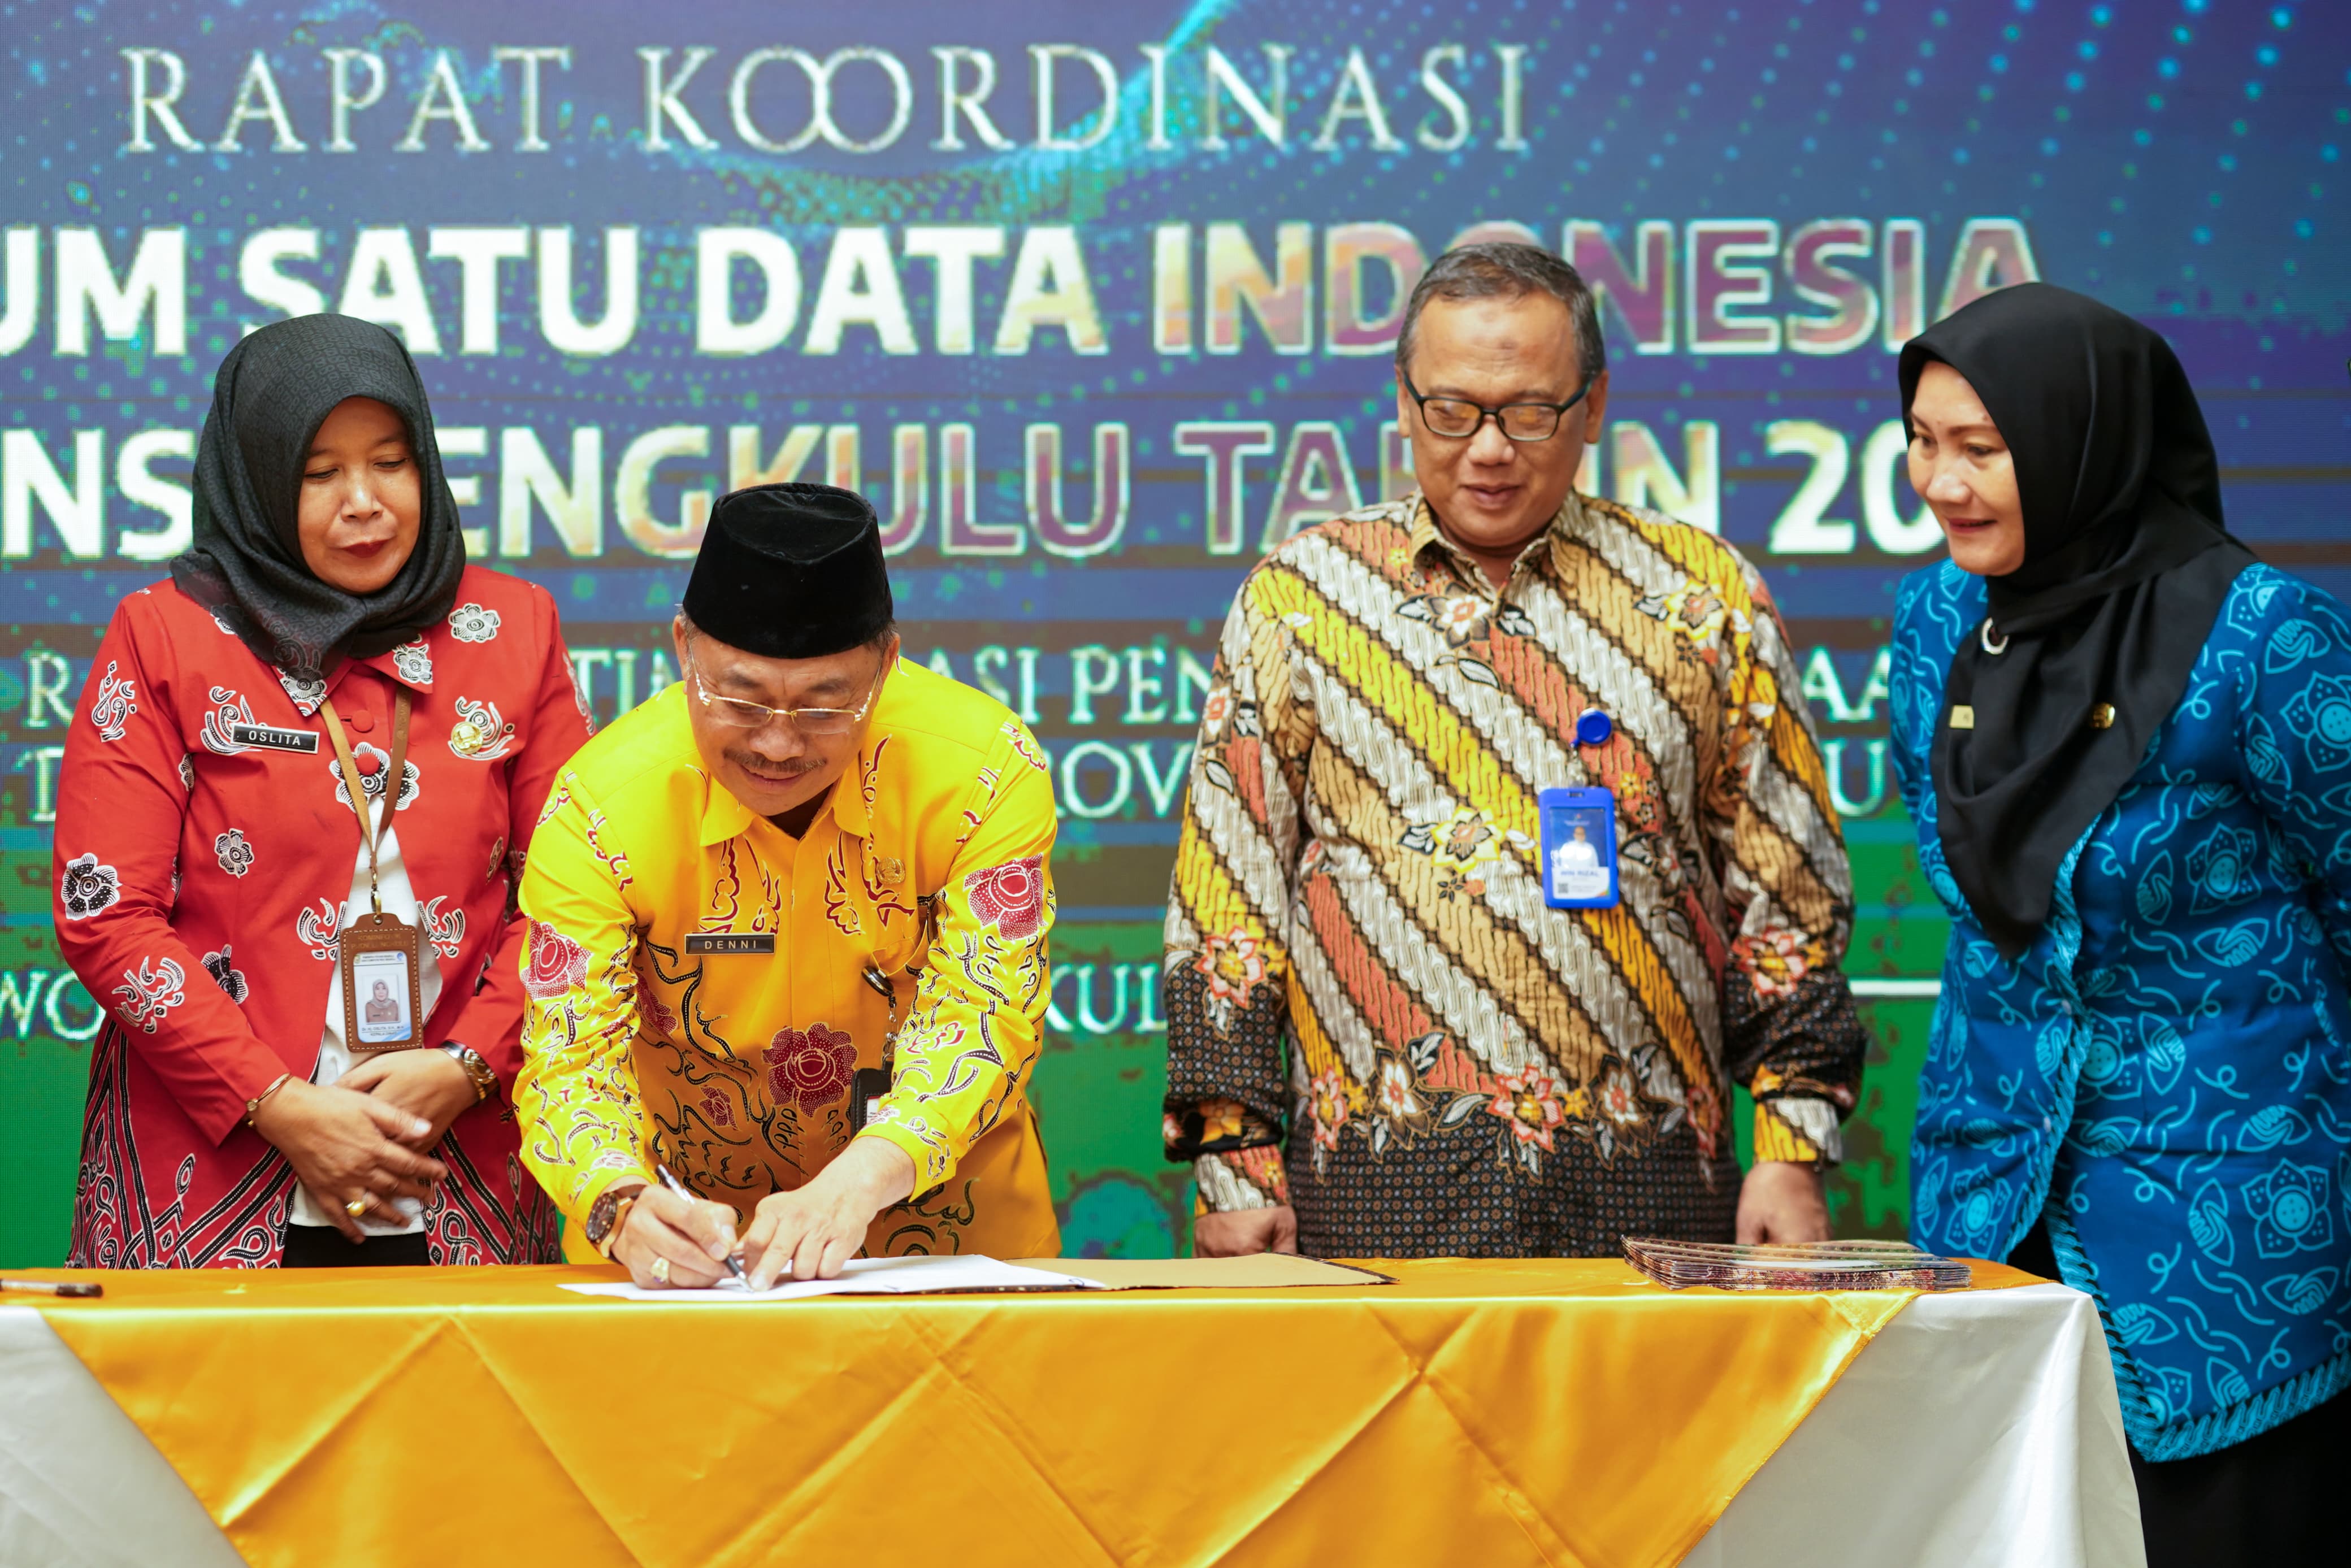 Tingkatkan Kualitas dan Akurasi Data, Rapat Koordinasi SDI Tingkat Provinsi Bengkulu Hadirkan 3 Narasumber